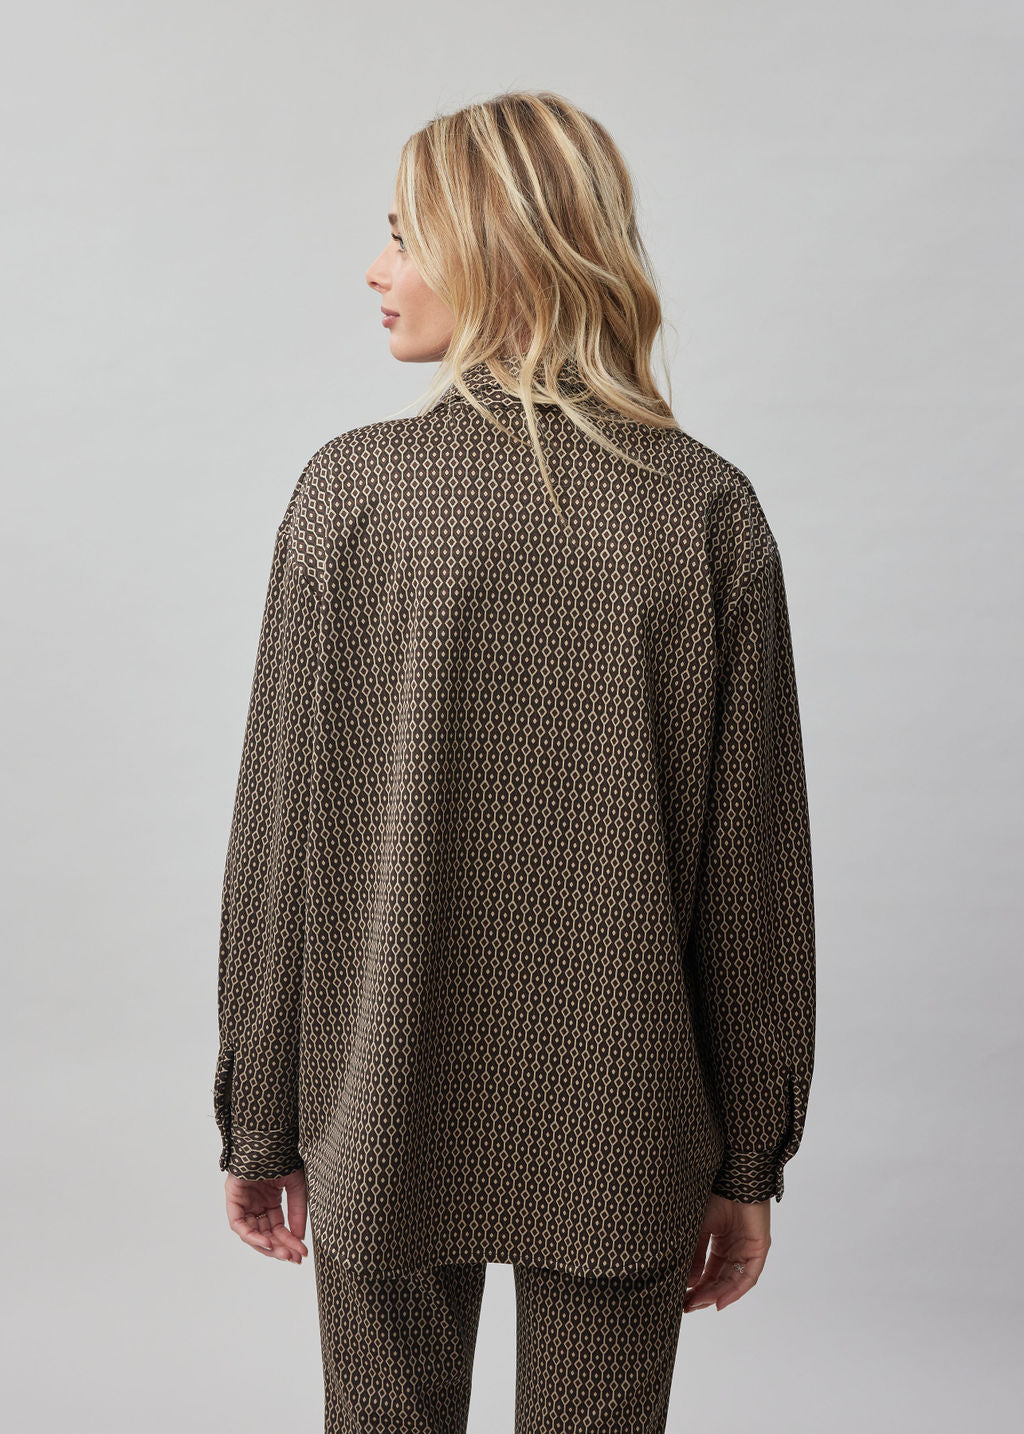 Sur-chemise en milano imprimé Marron 3 | Vêtements Femme Lauren Vidal